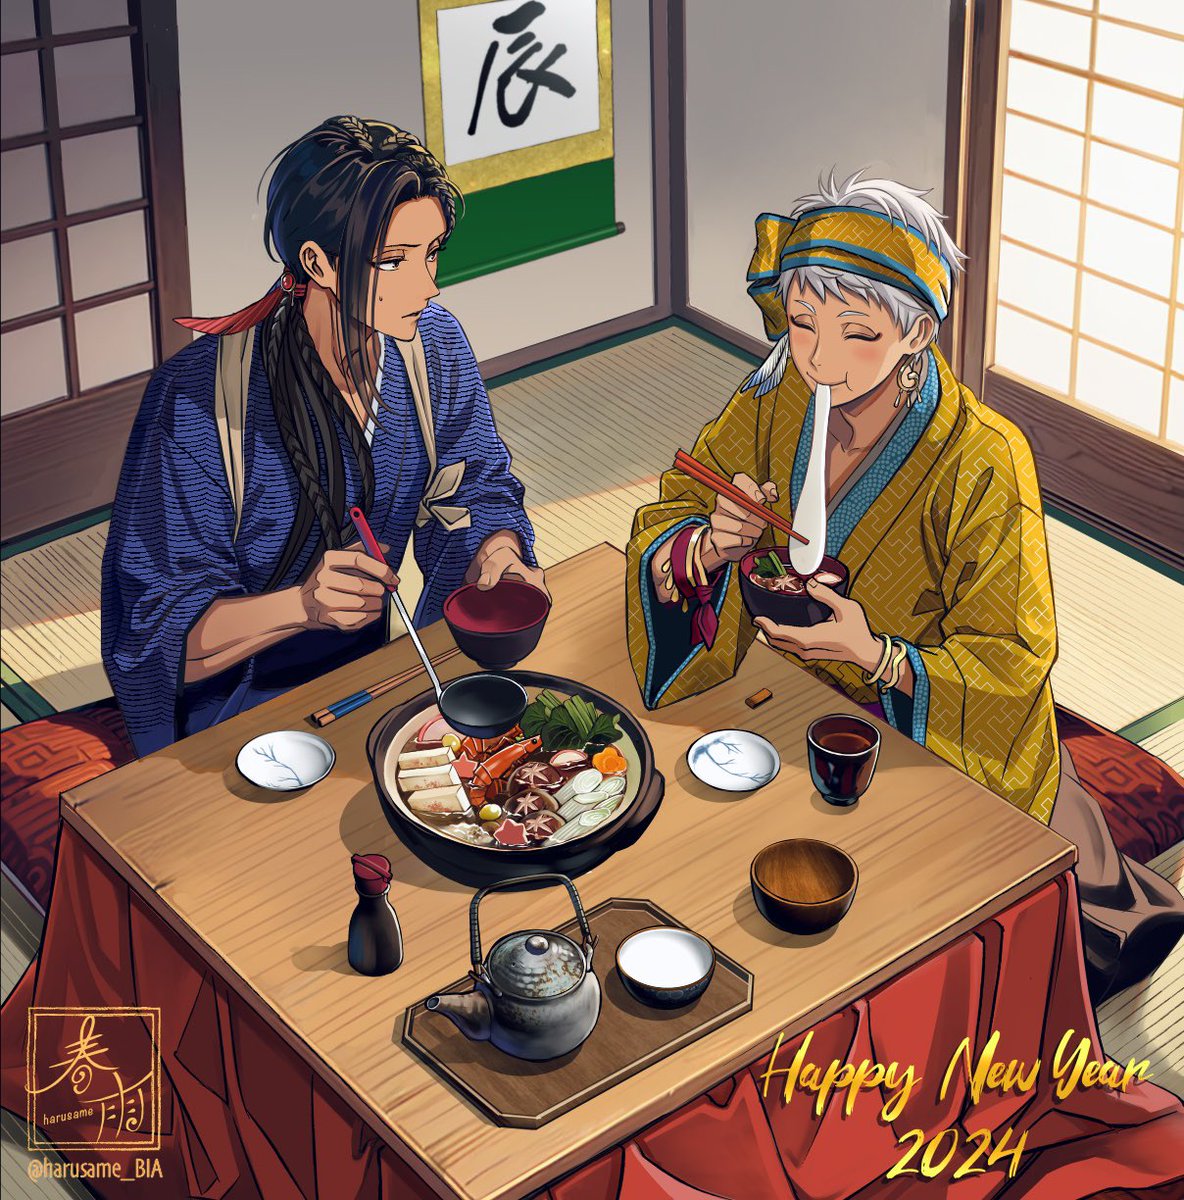 「Happy new year 2024今年もよろしくお願い致します! 」|はるさめのイラスト